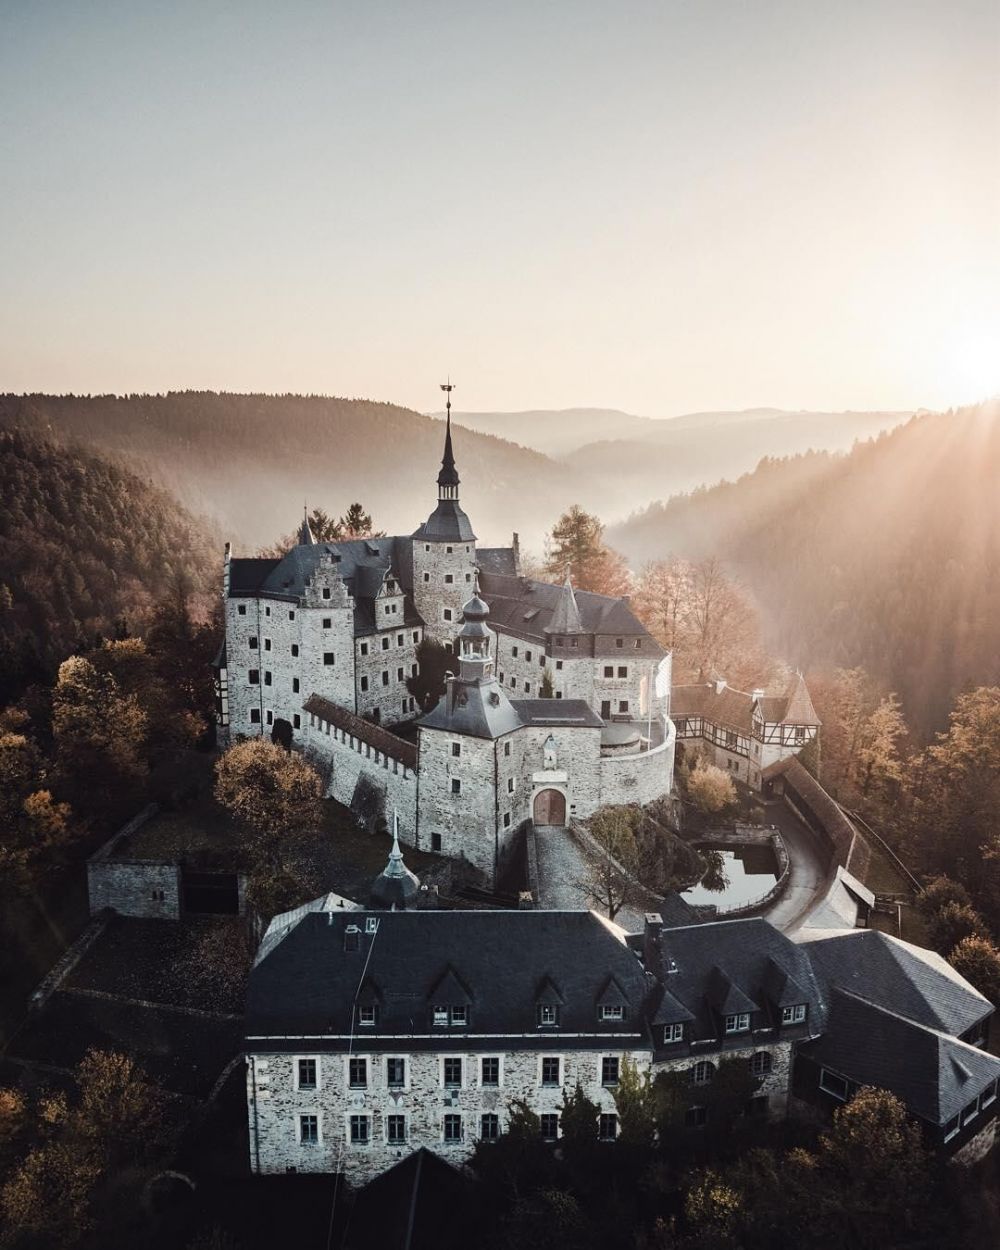 5 Kastil Megah di Bavaria-Jerman, Pesonanya Bikin Kamu Kagum